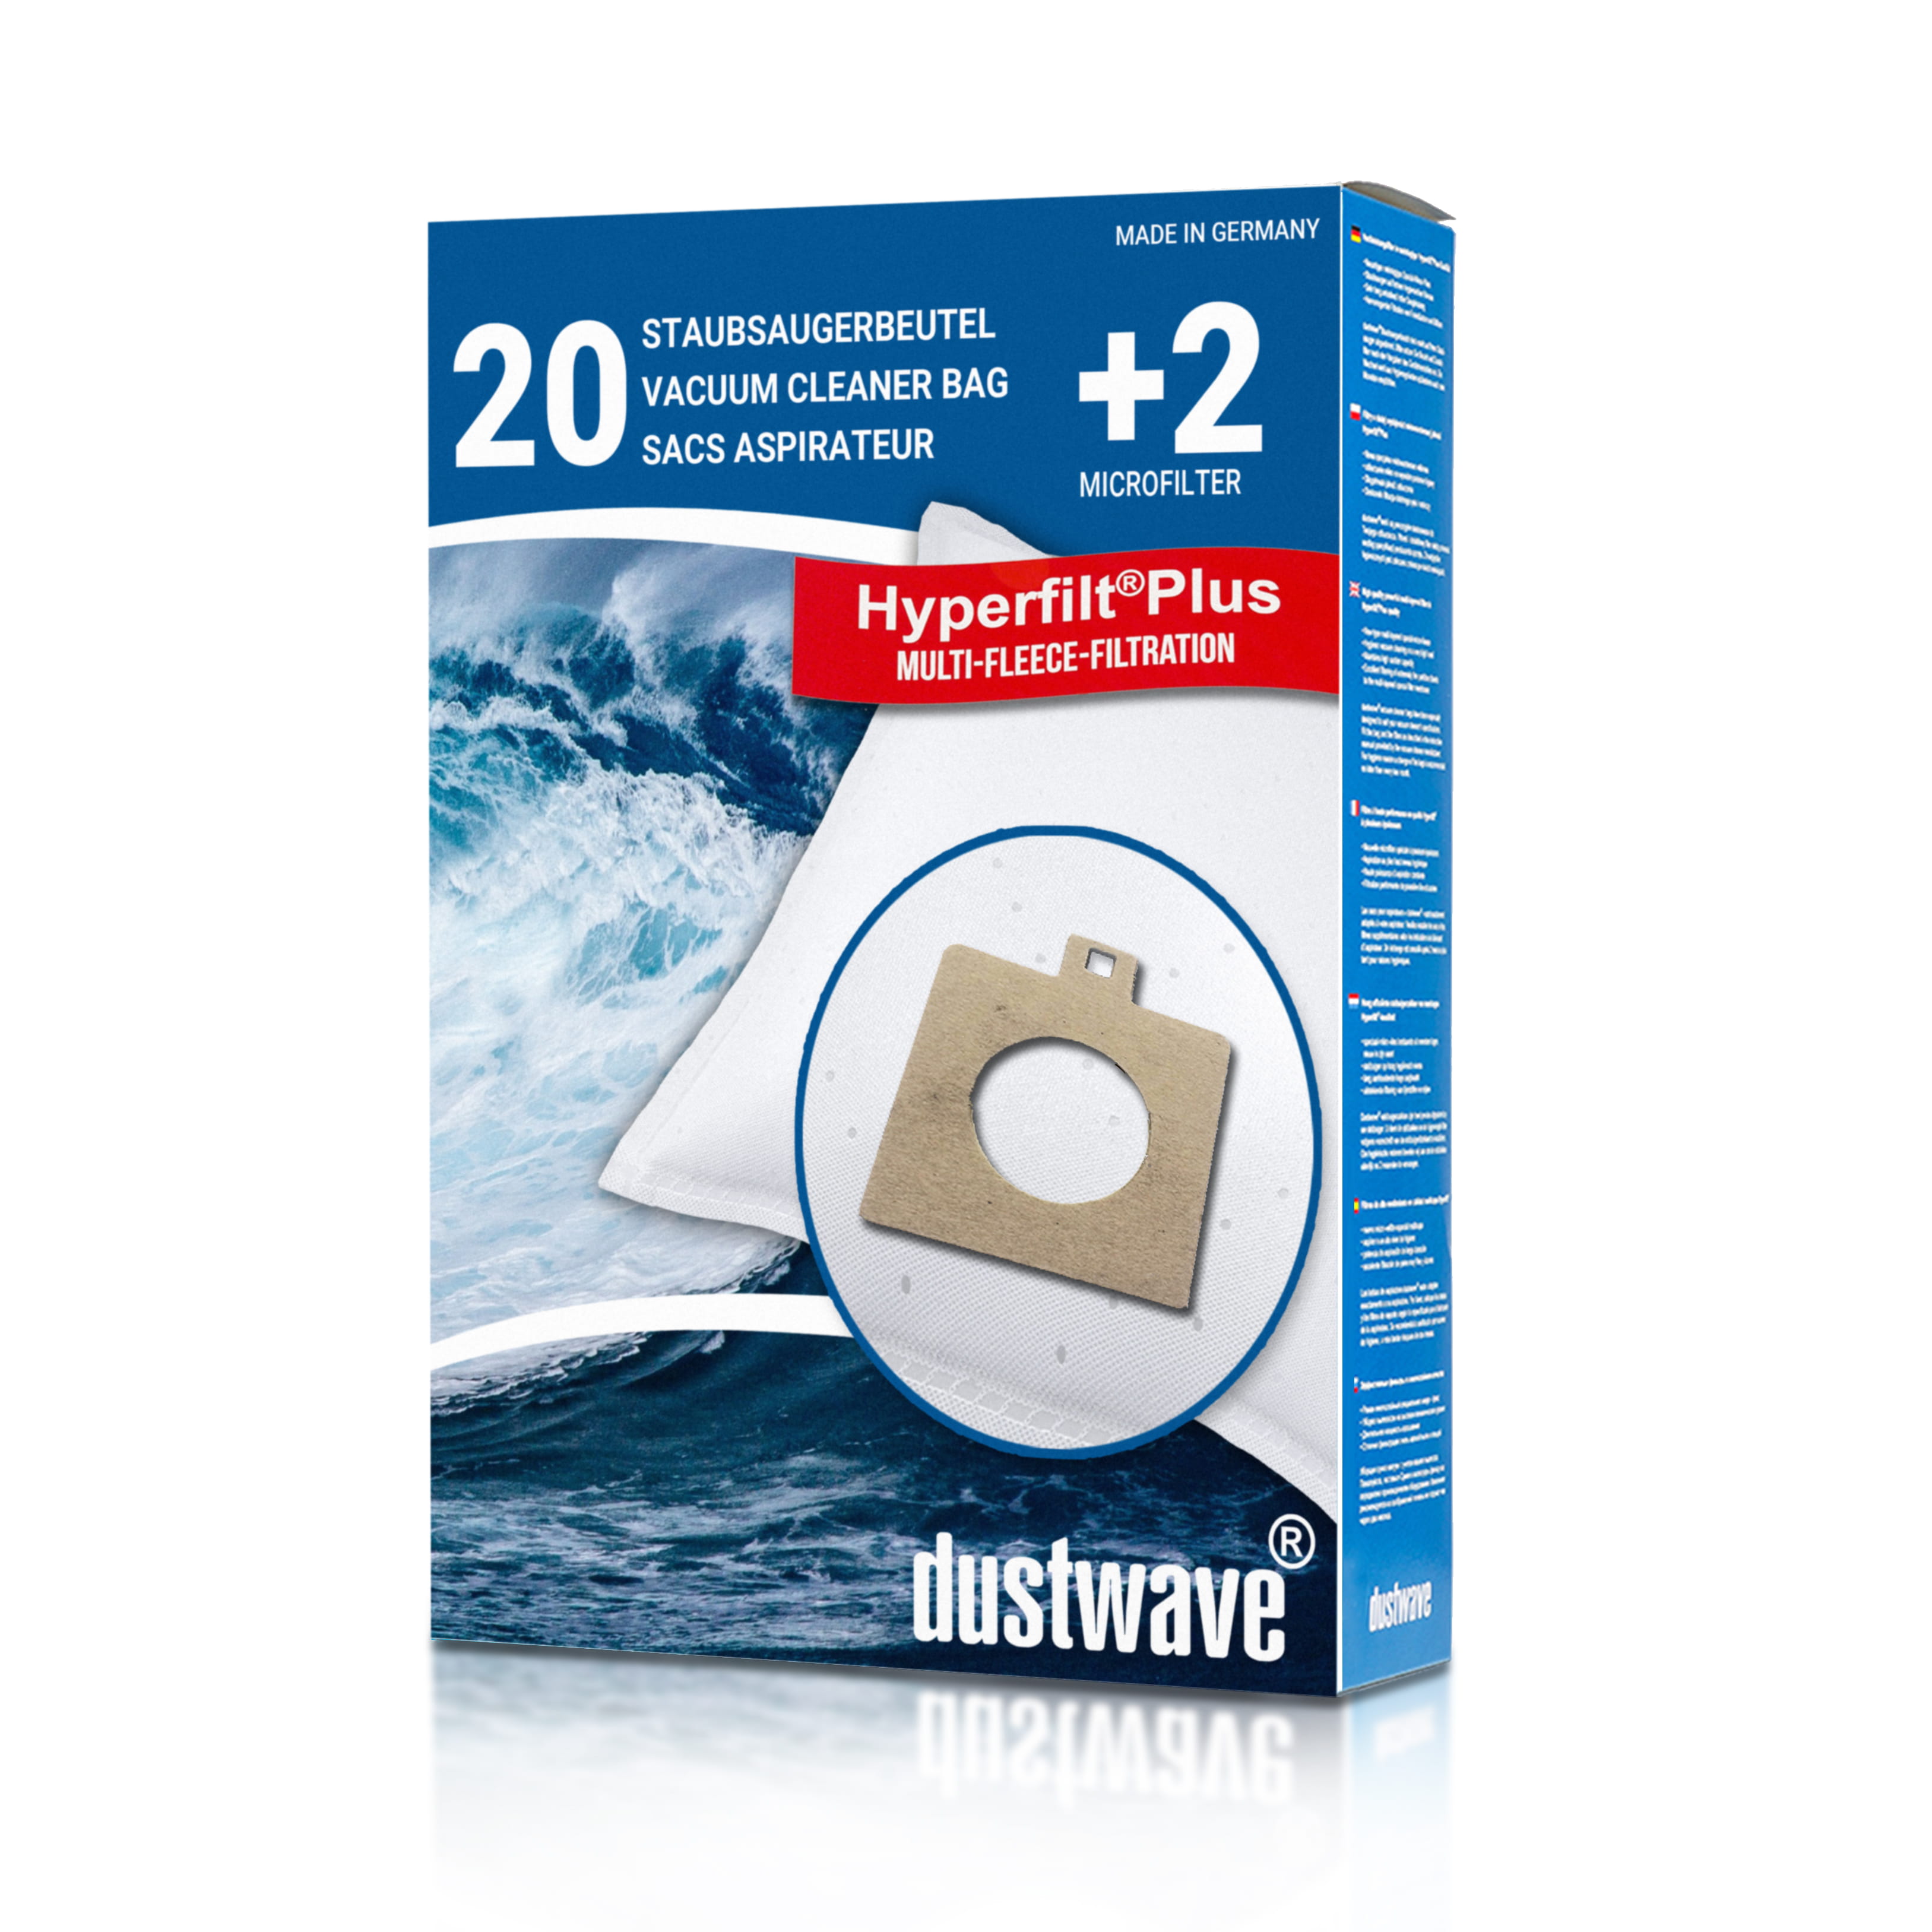 Dustwave® 20 Staubsaugerbeutel für AEG Smart 487 - hocheffizient mit Hygieneverschluss - Made in Germany